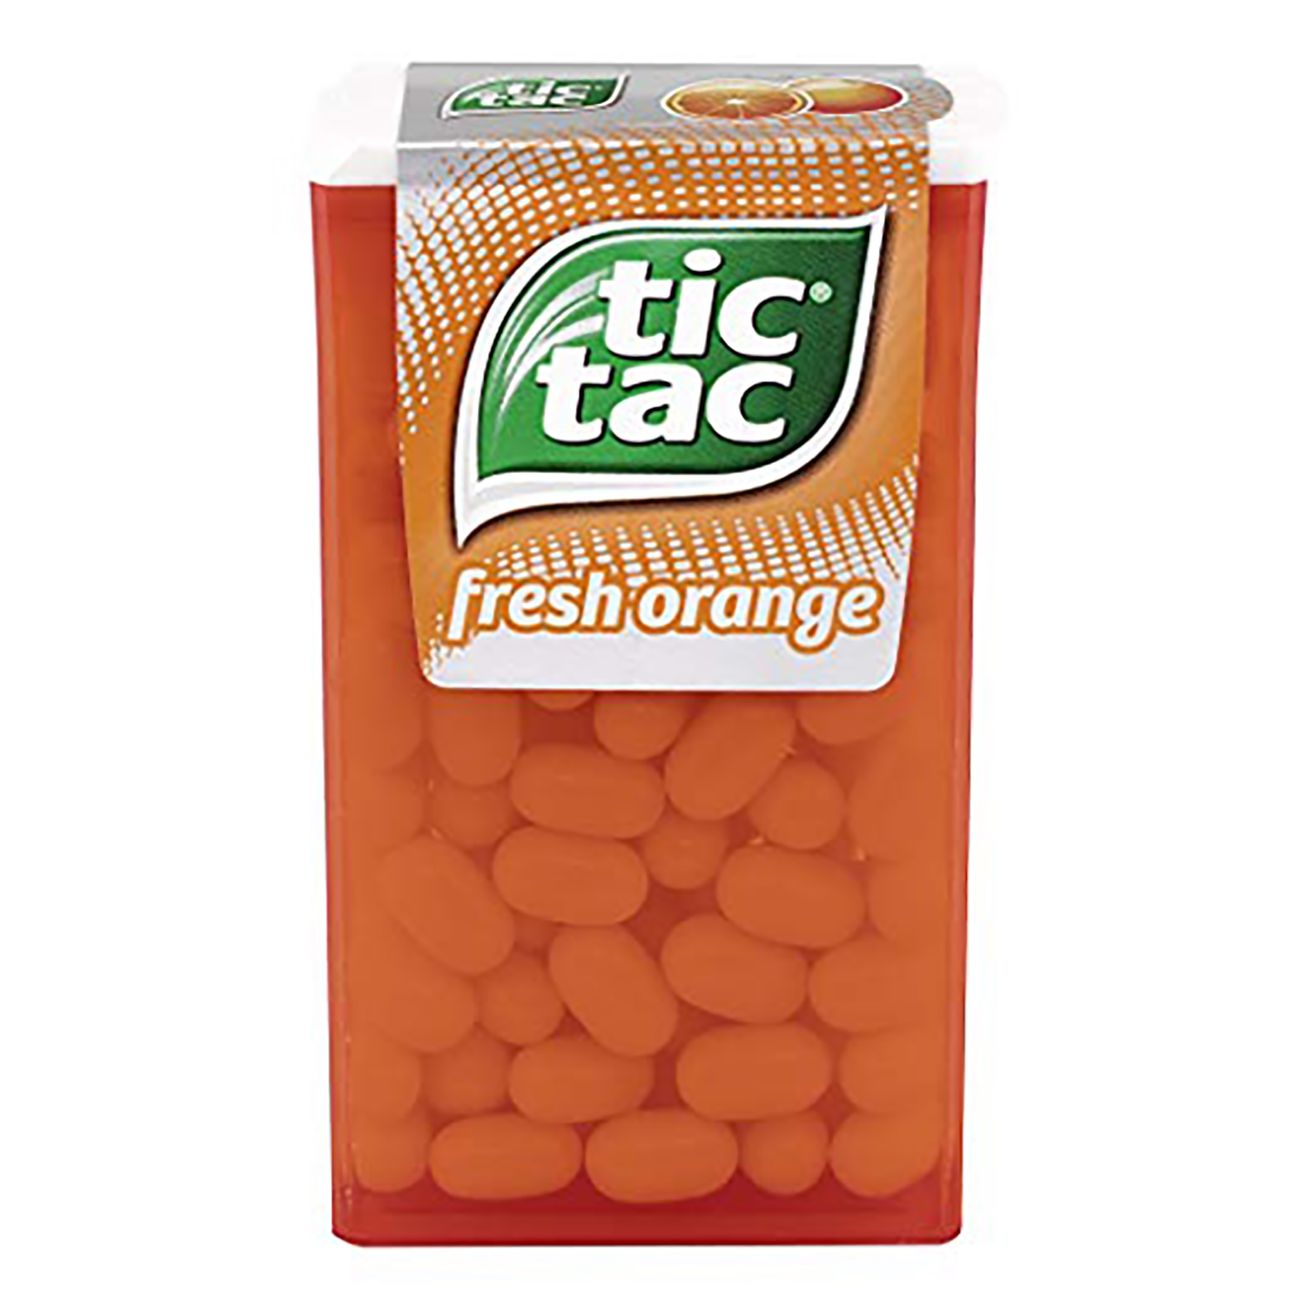 tic-tac-gm-orange-90305-1